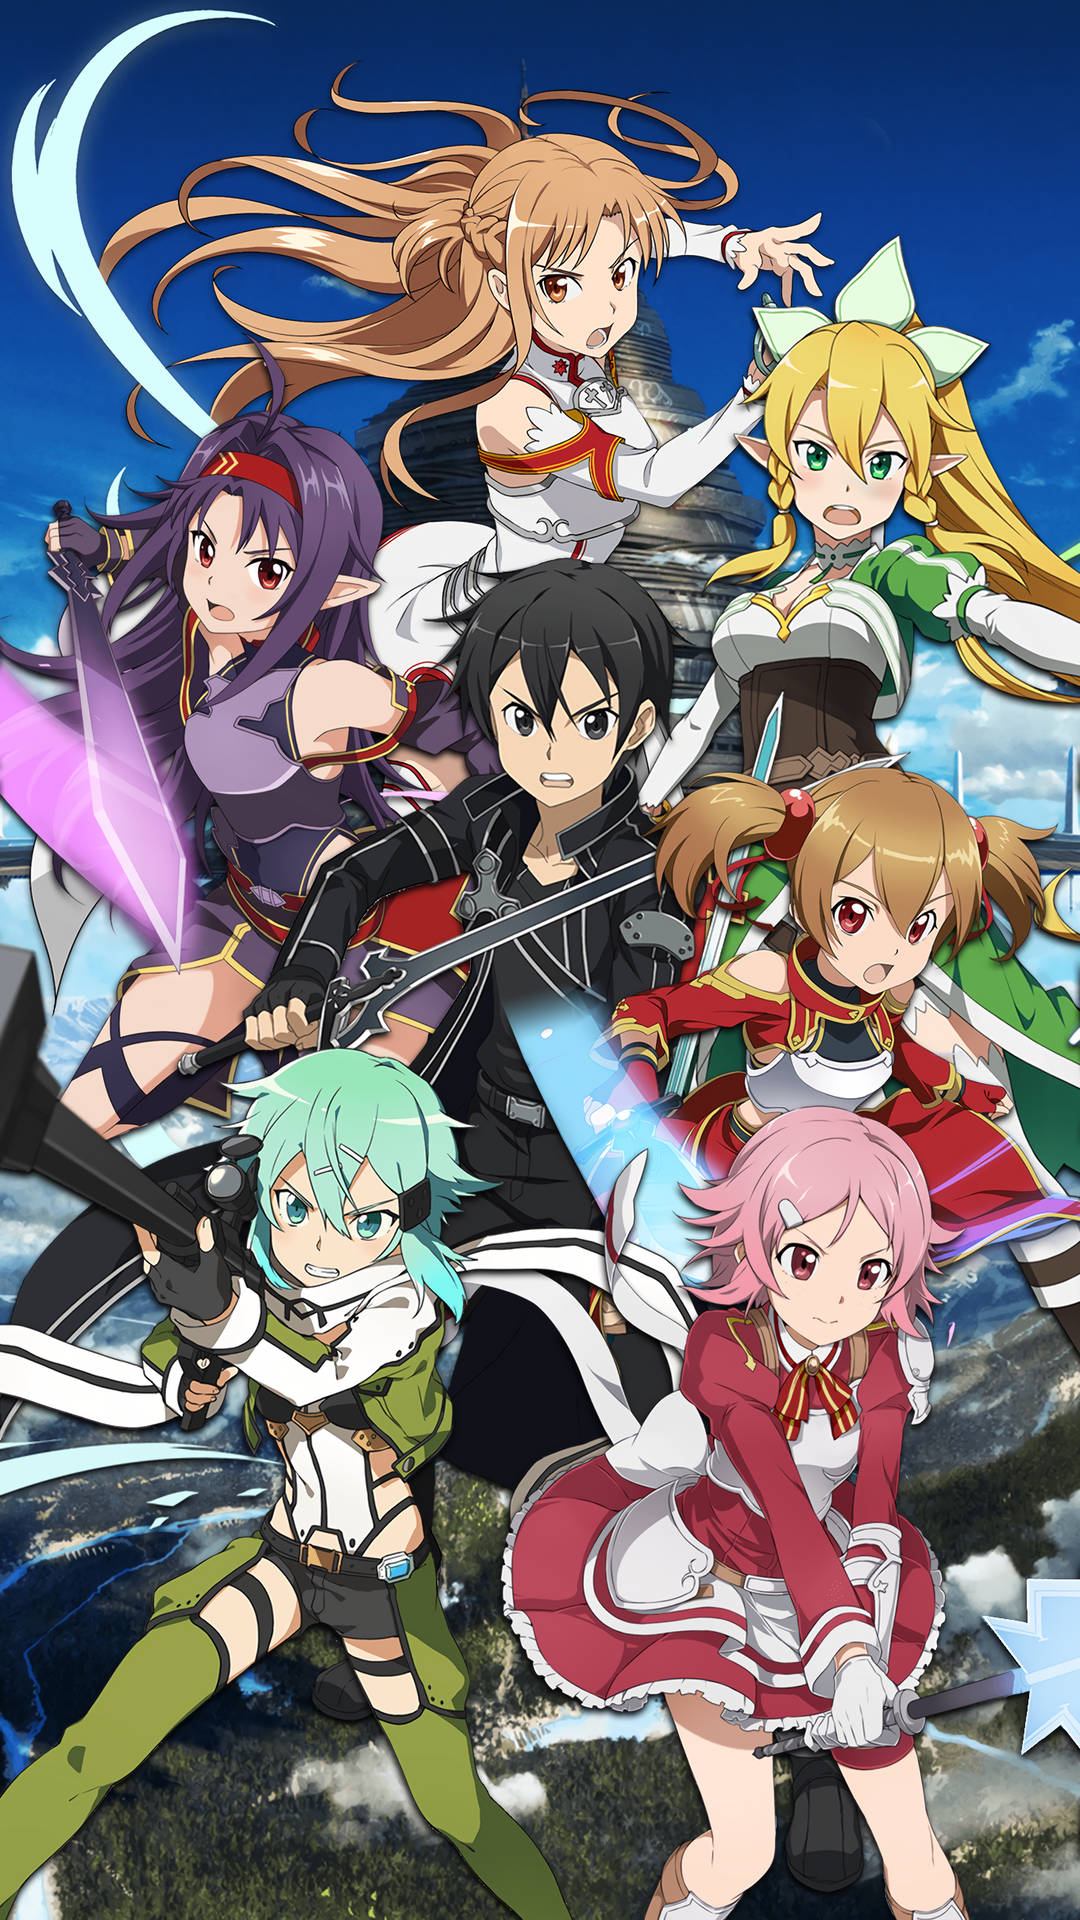 Sao Characters With Kirito Background